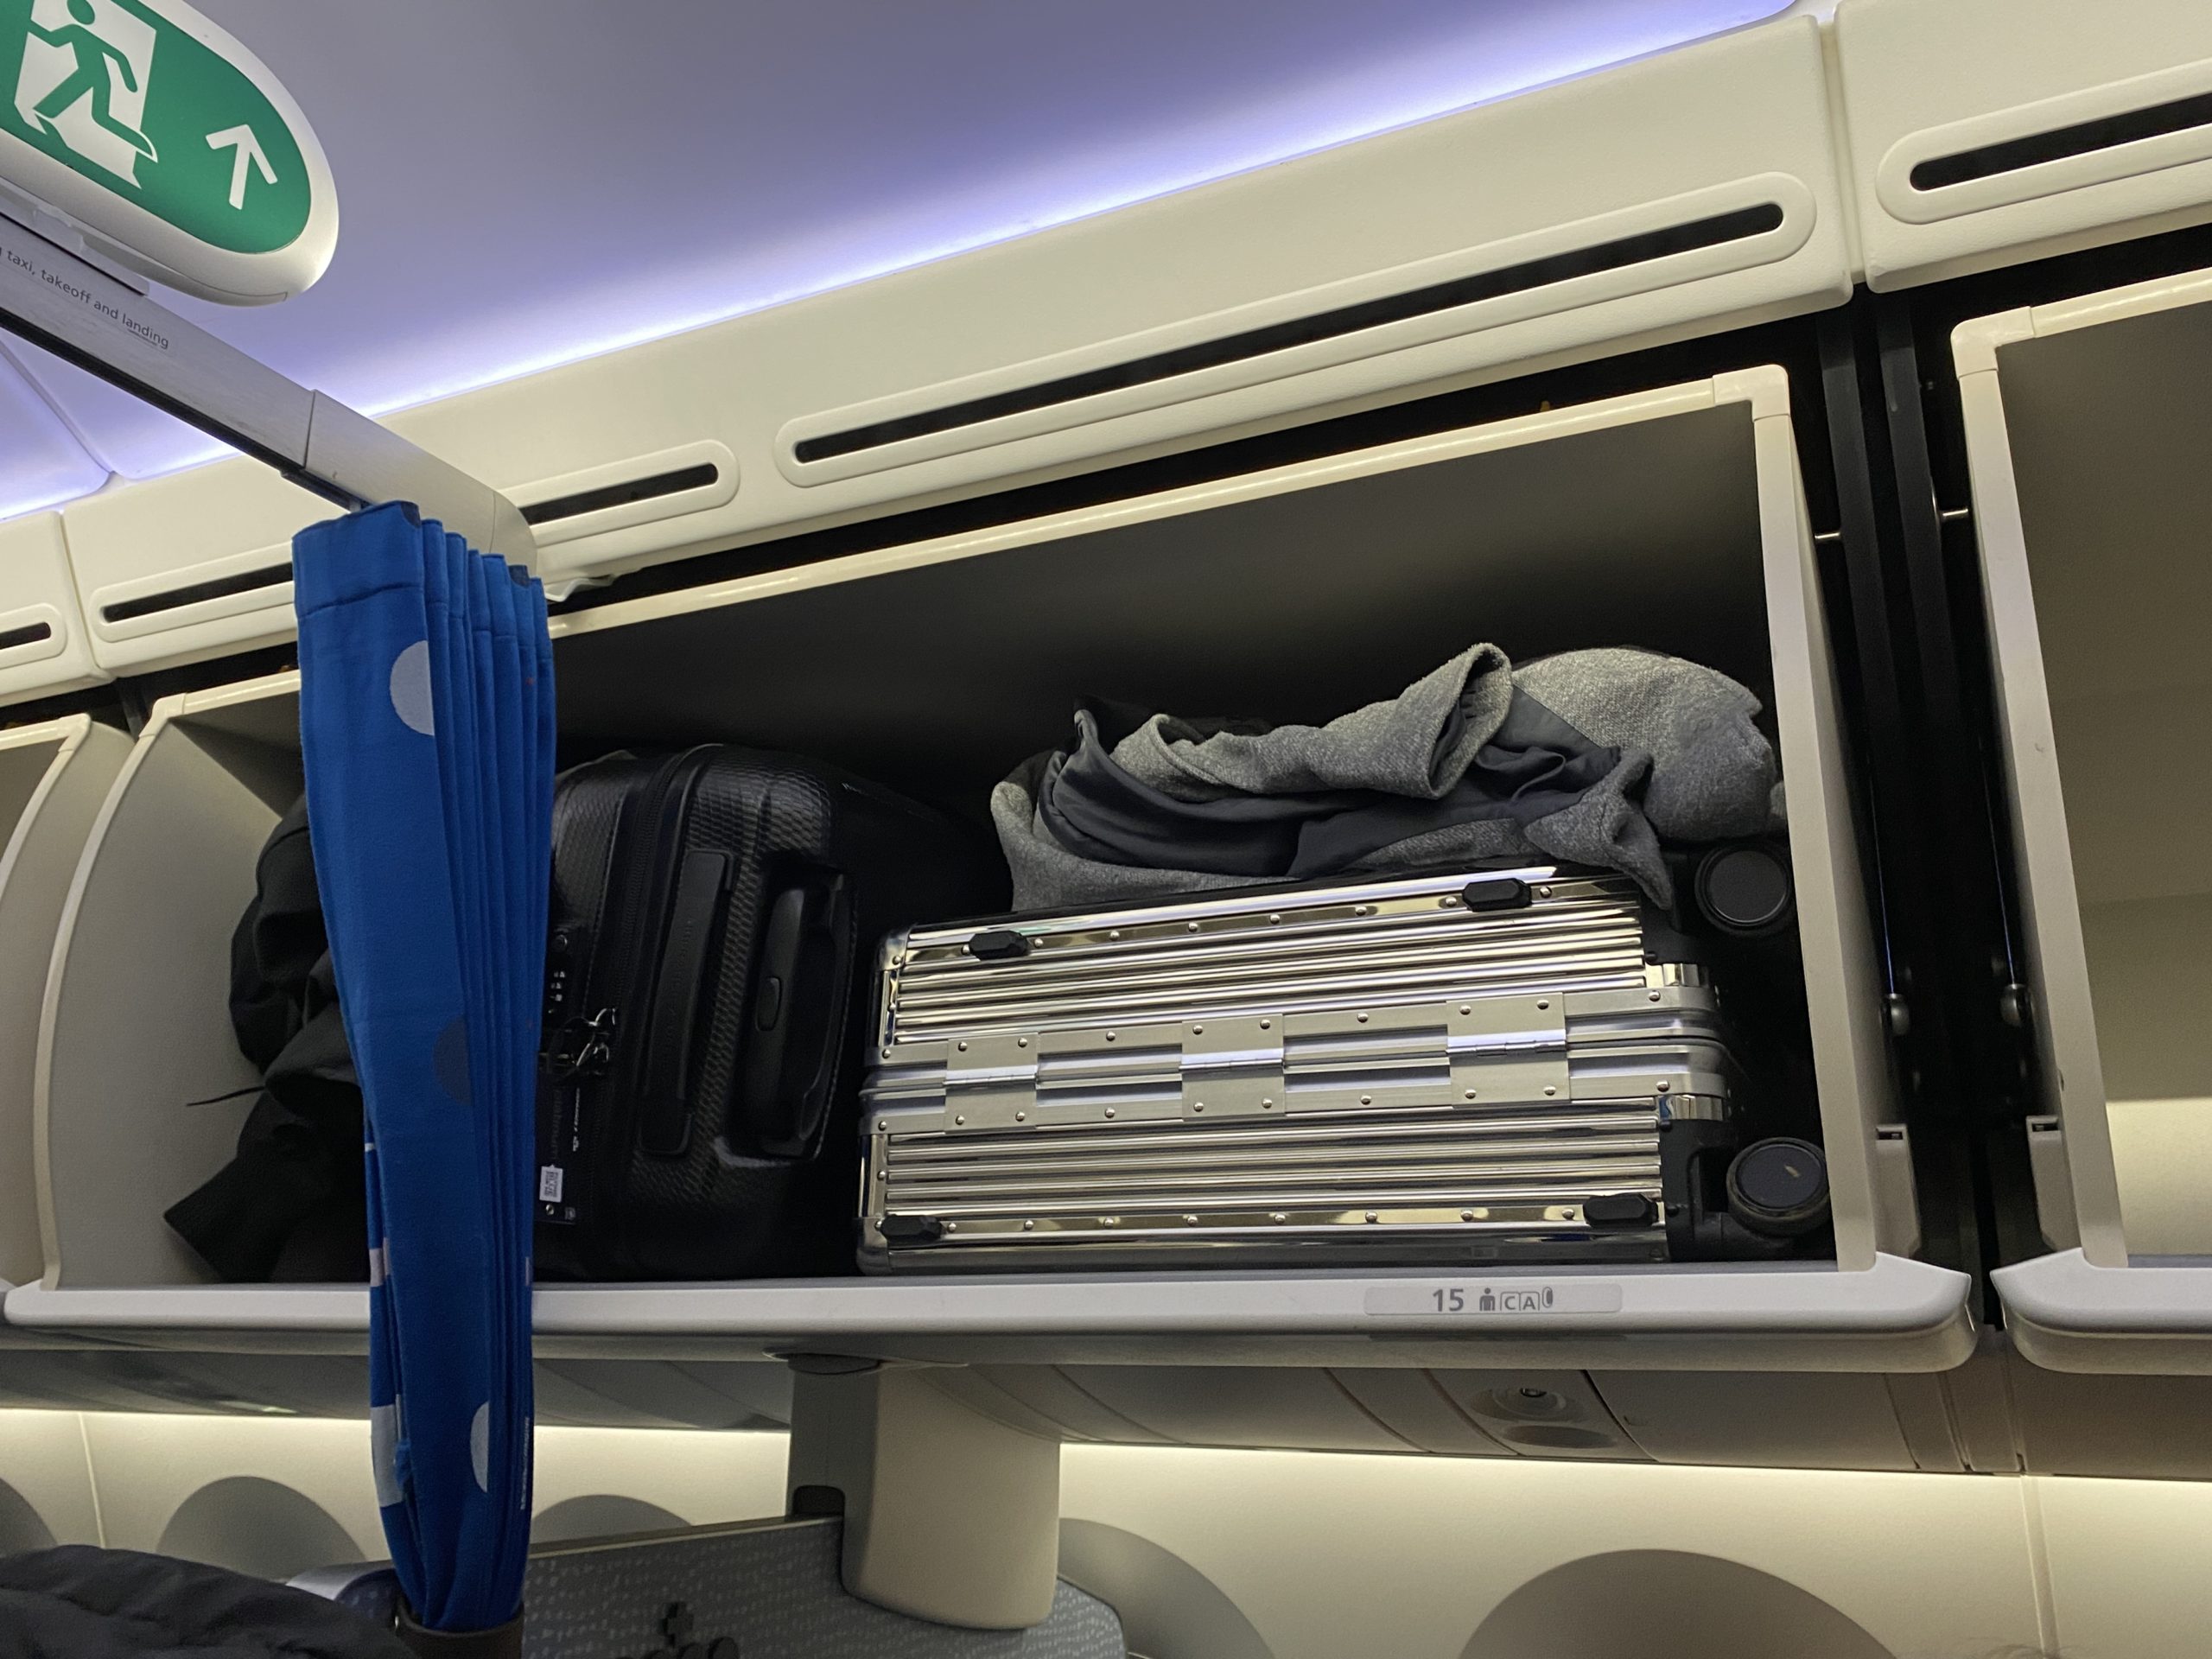 Genug Platz für meinen Koffer! Als Gast der Premium Comfort Class von KLM kann ich neben zwei Check-in-Gepäckstücken eine Handtasche und zwei Handgepäckstücke mit an Bord nehmen, ebenso werde ich beim Preboarding aufgerufen. Bild: Isabella Sauer